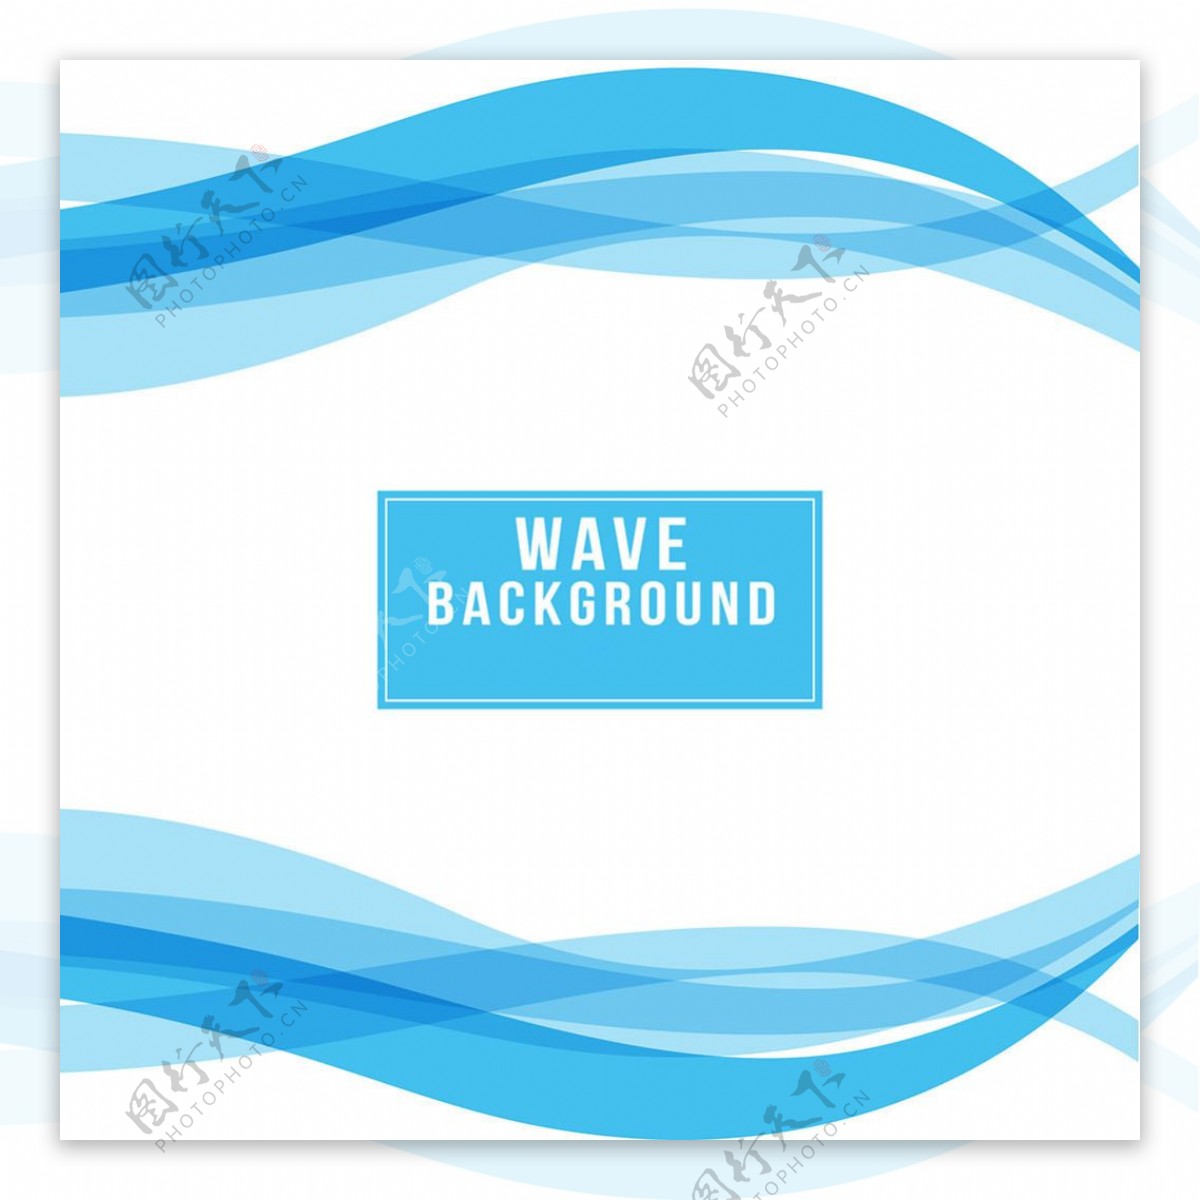 白色背景蓝色波浪状广告矢量模板